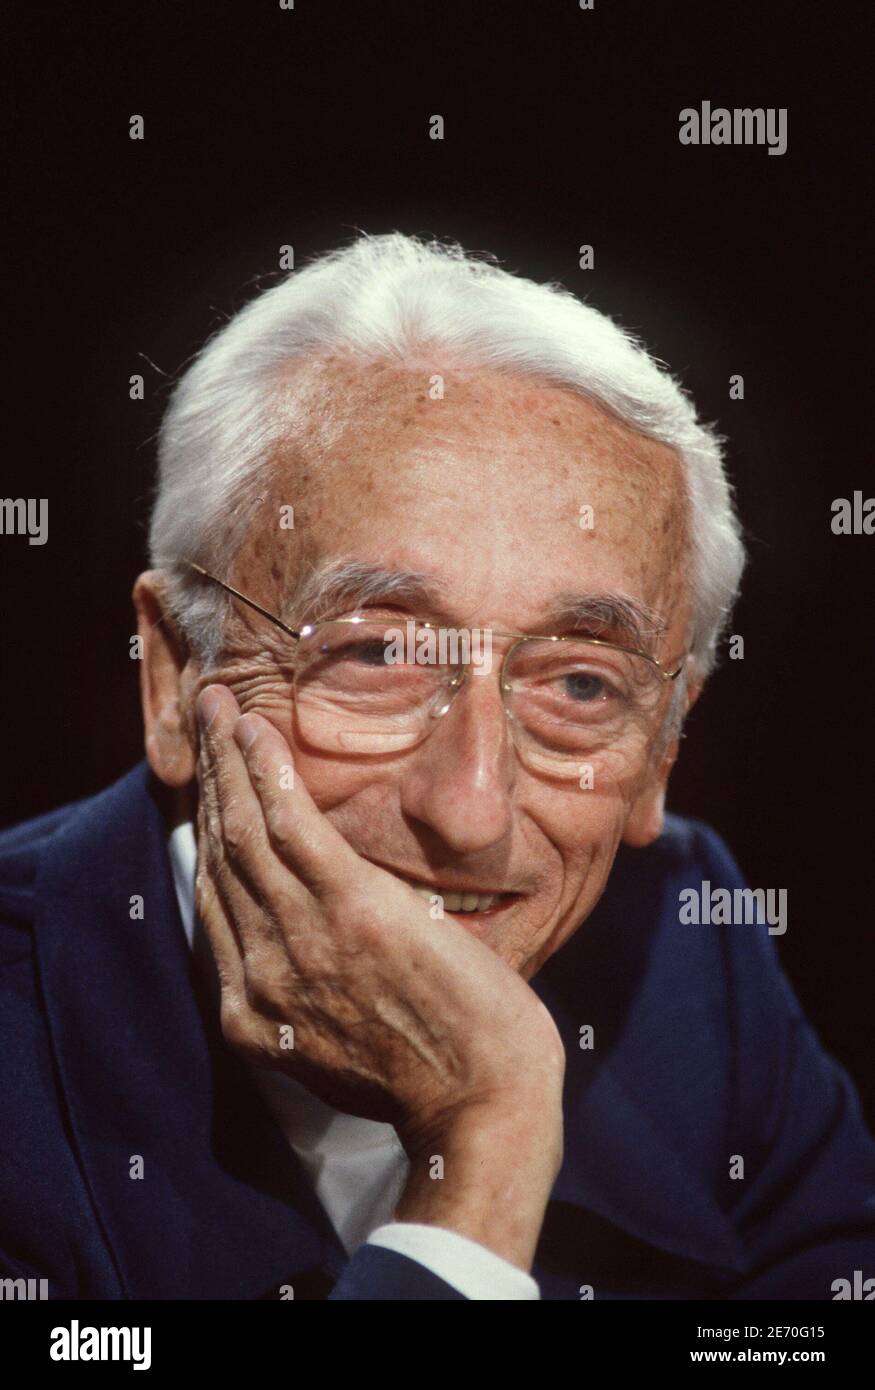 L'océanographe français Jacques-Yves Cousteau lors d'une émission télévisée 7/7, à Paris, France, le 16 avril 1989. Photo de Patrick Durand/ABACAPRESS.COM Banque D'Images